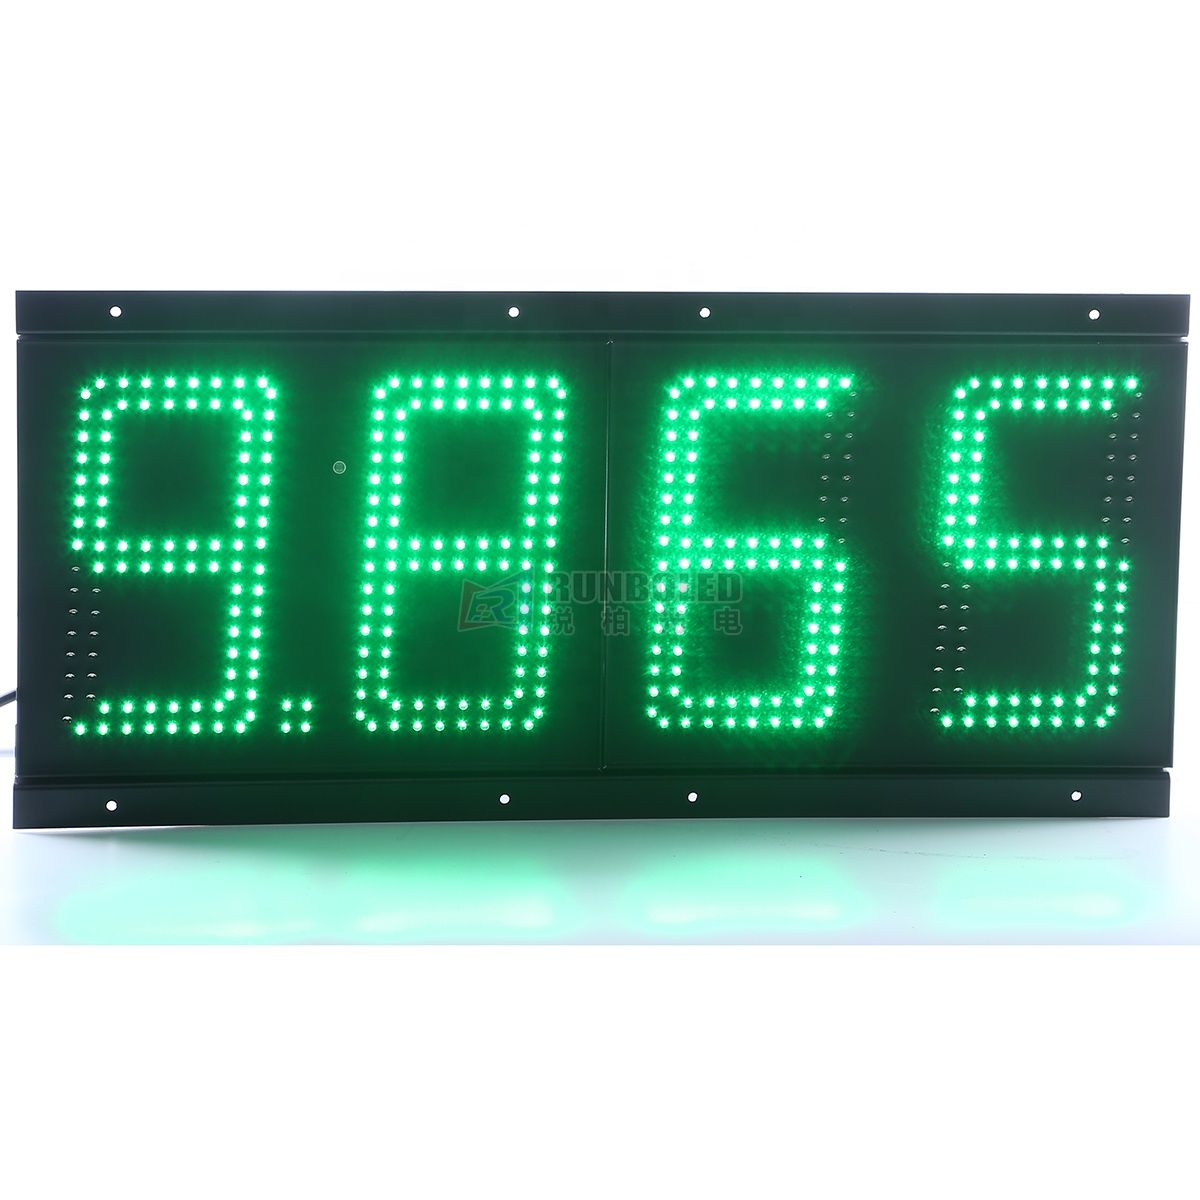 Tableau numérique simple essence blanc / vert / bleu / rouge / jaune avec panneau de prix de gaz LED 6 '' / 8 '' / 10 '' / 12 '' / 16 '' / 18 '' / 20 '' / 24 '' pour la publicité des stations-service